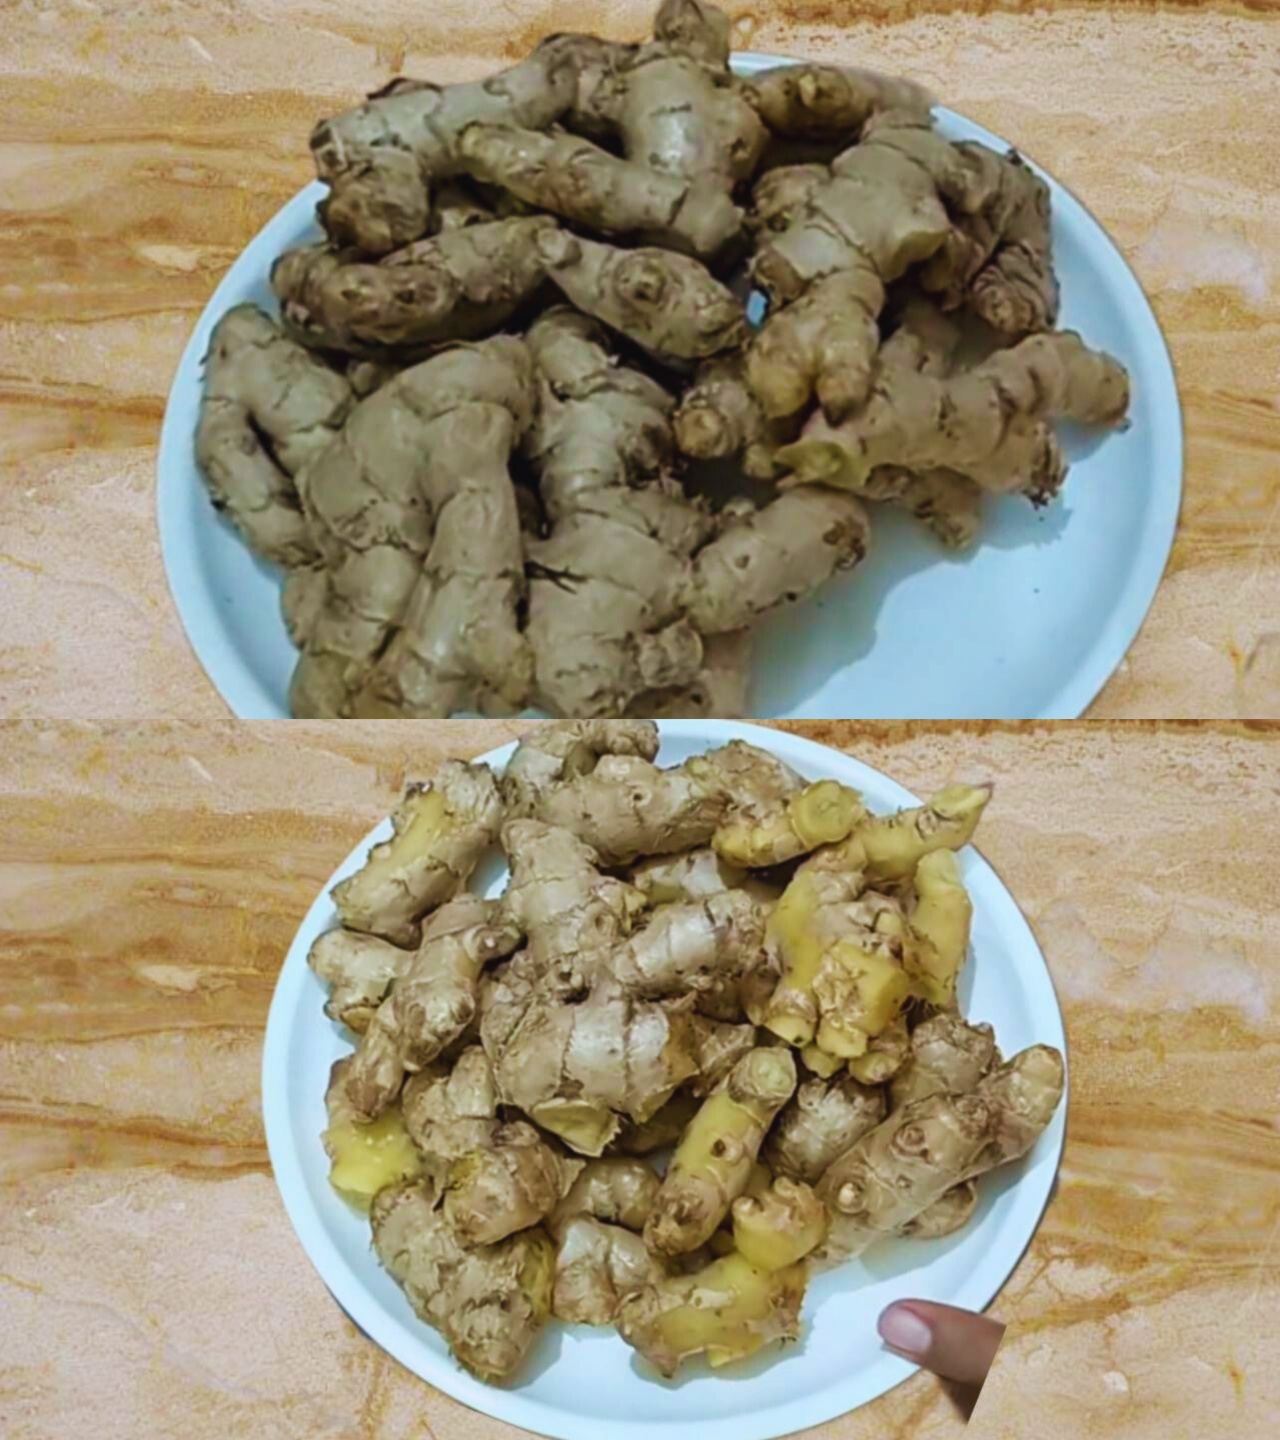 500 gm of fresh ginger